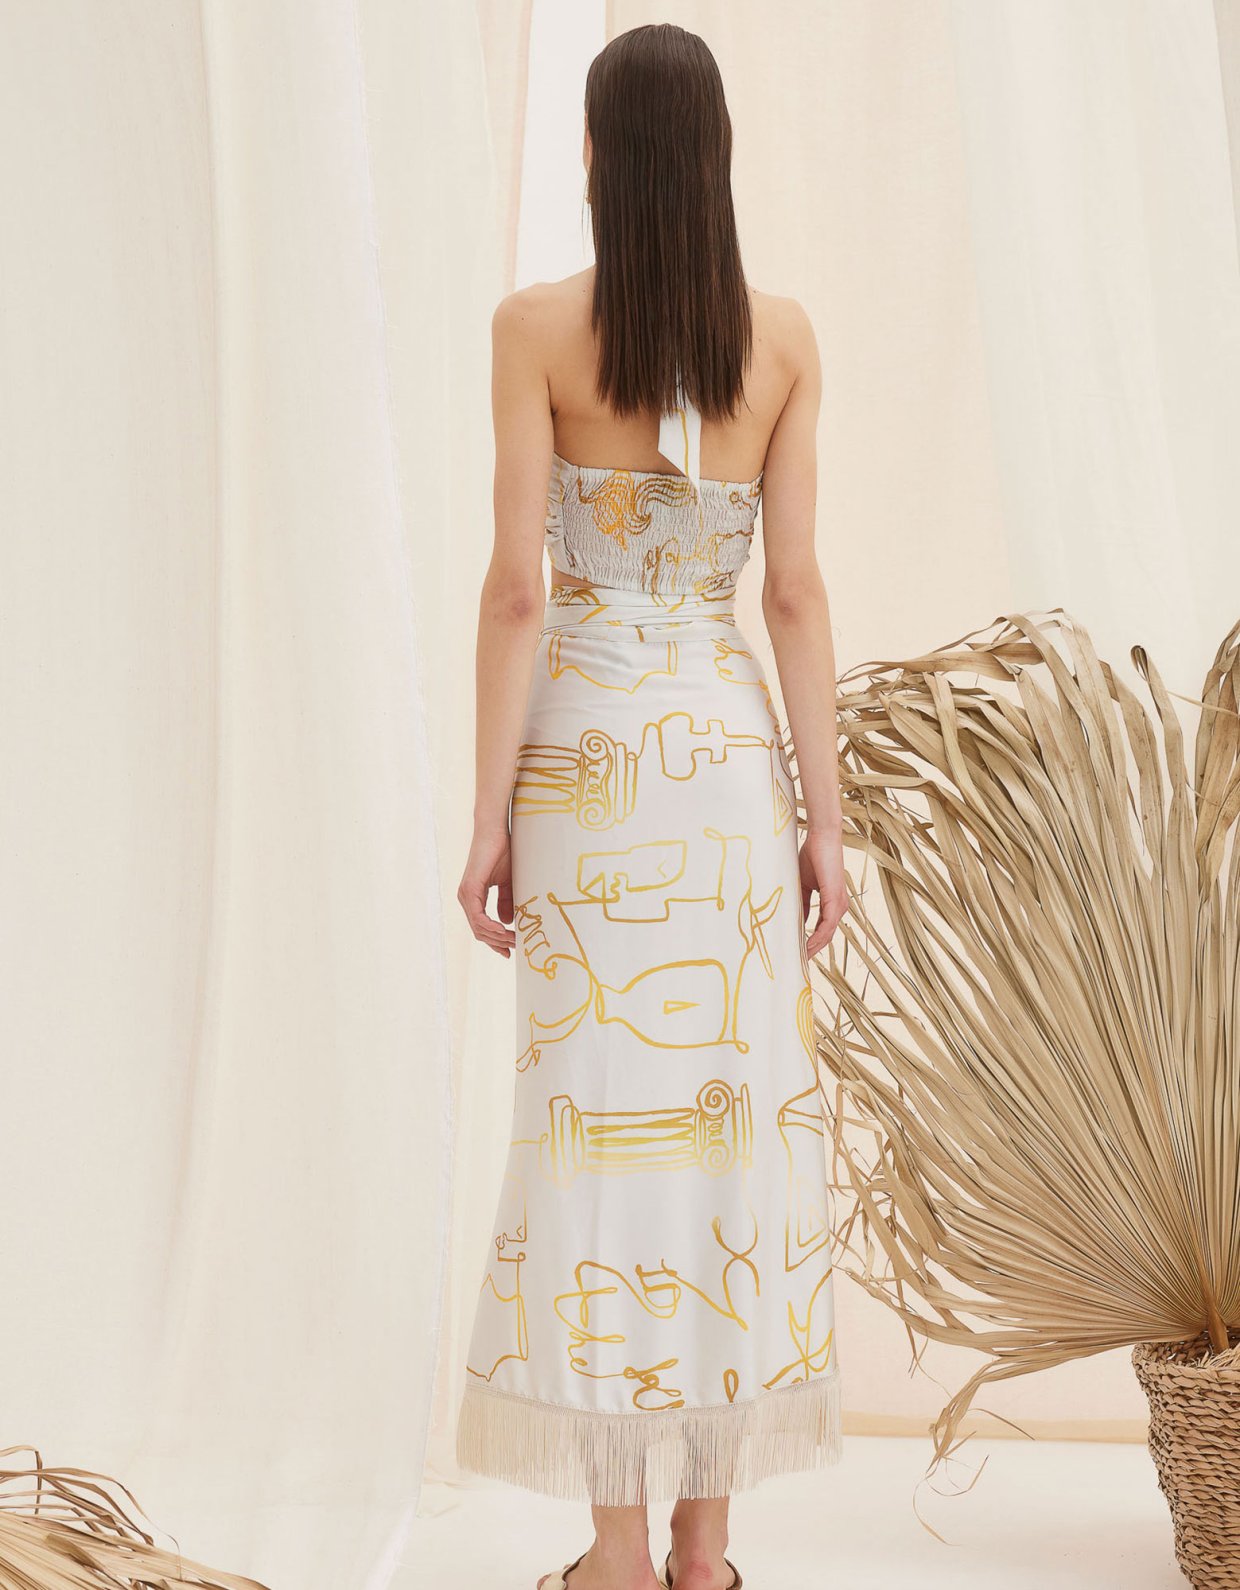 The Knl's Aphrodite midi dress-skirt print off white-gold